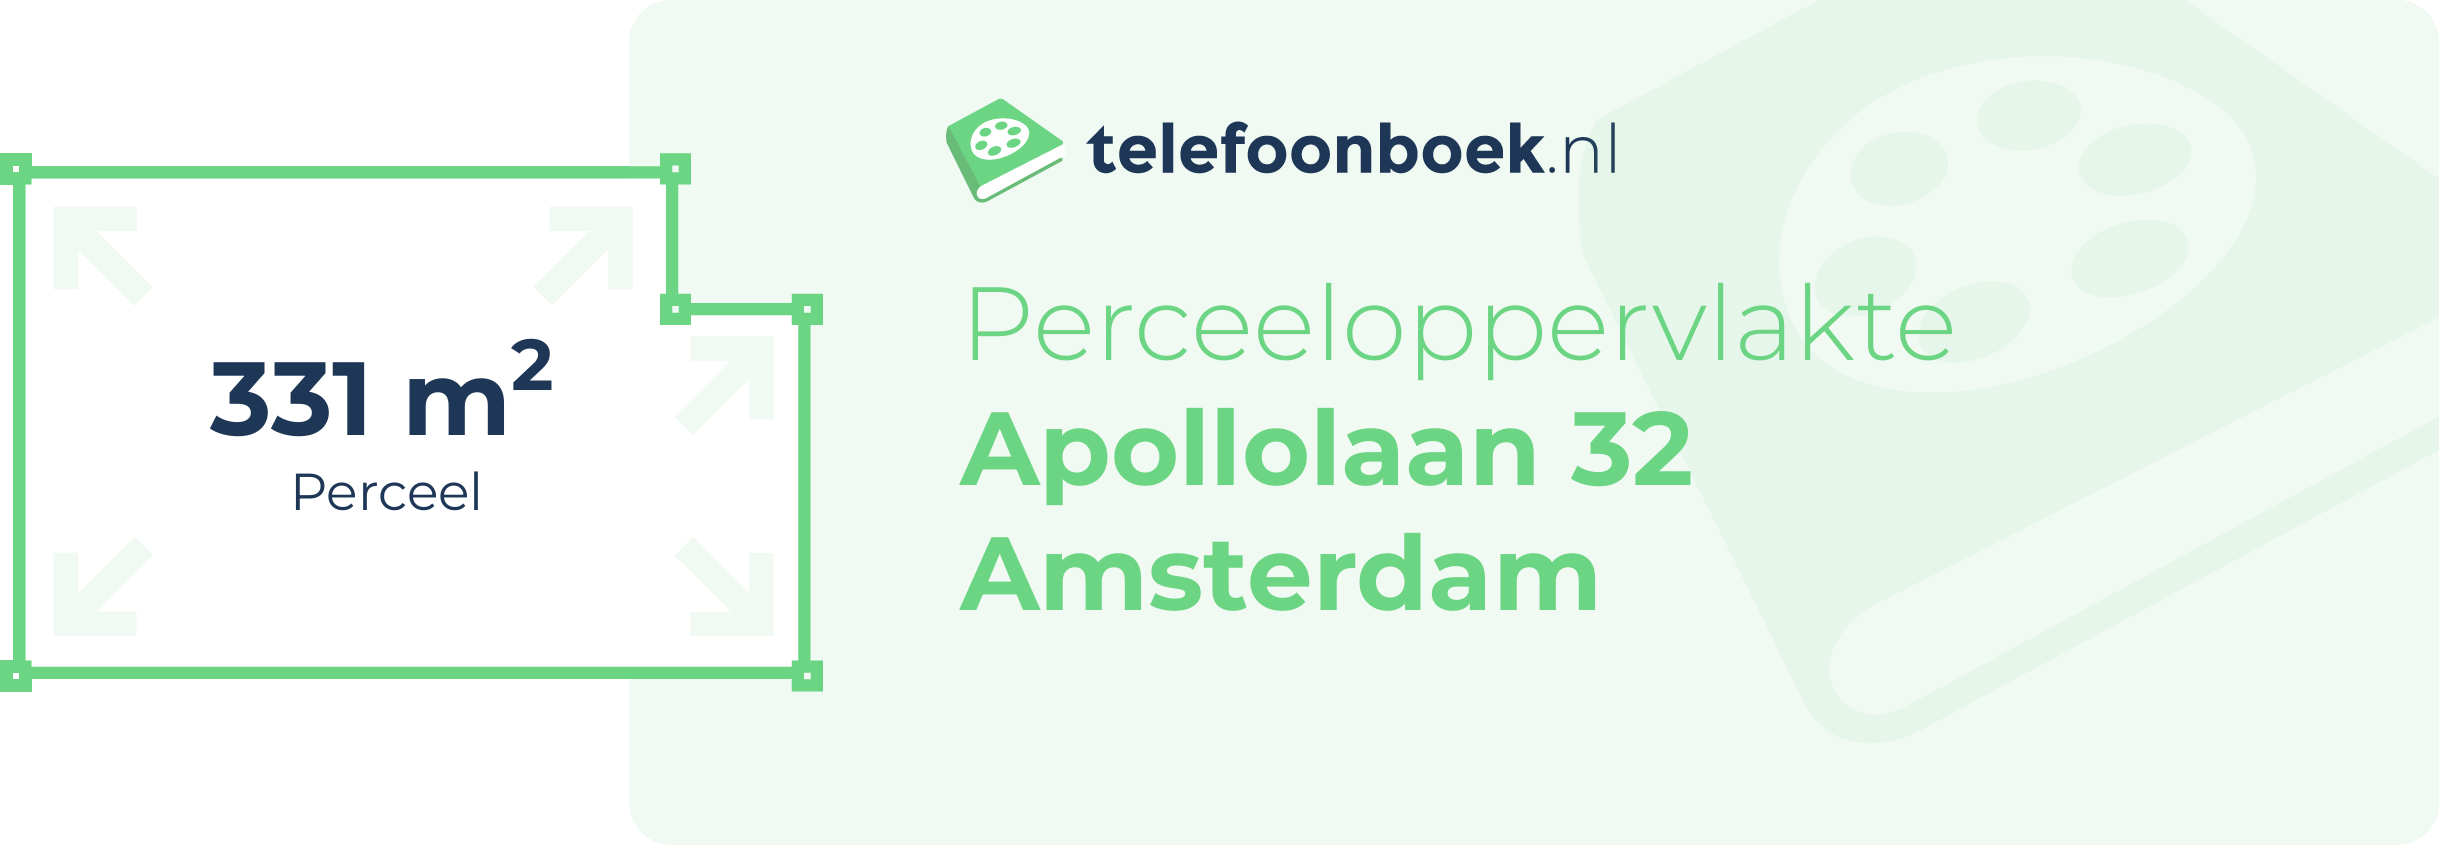 Perceeloppervlakte Apollolaan 32 Amsterdam